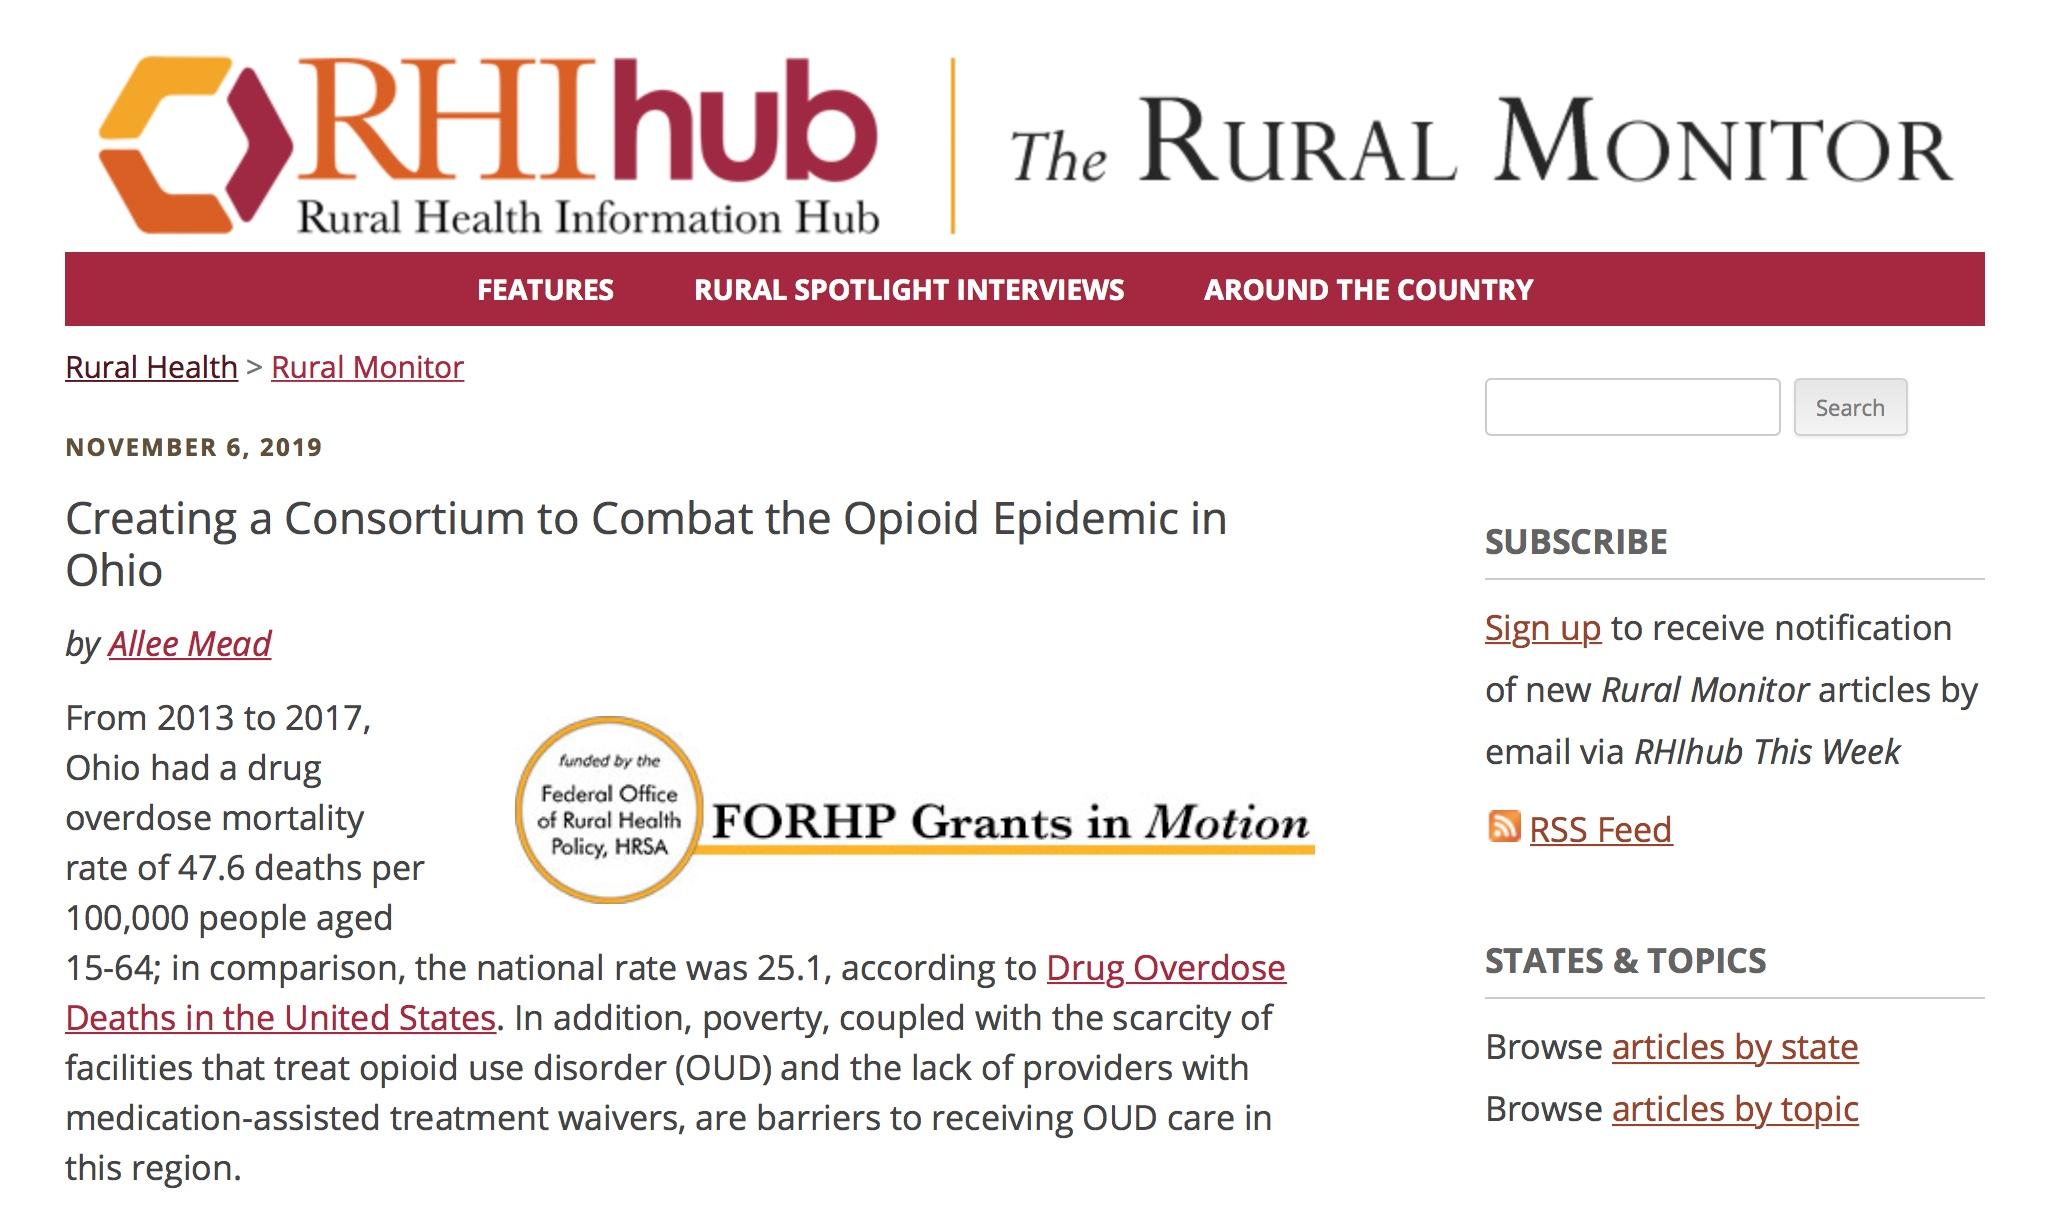 Screenshot of RHI hub webpage